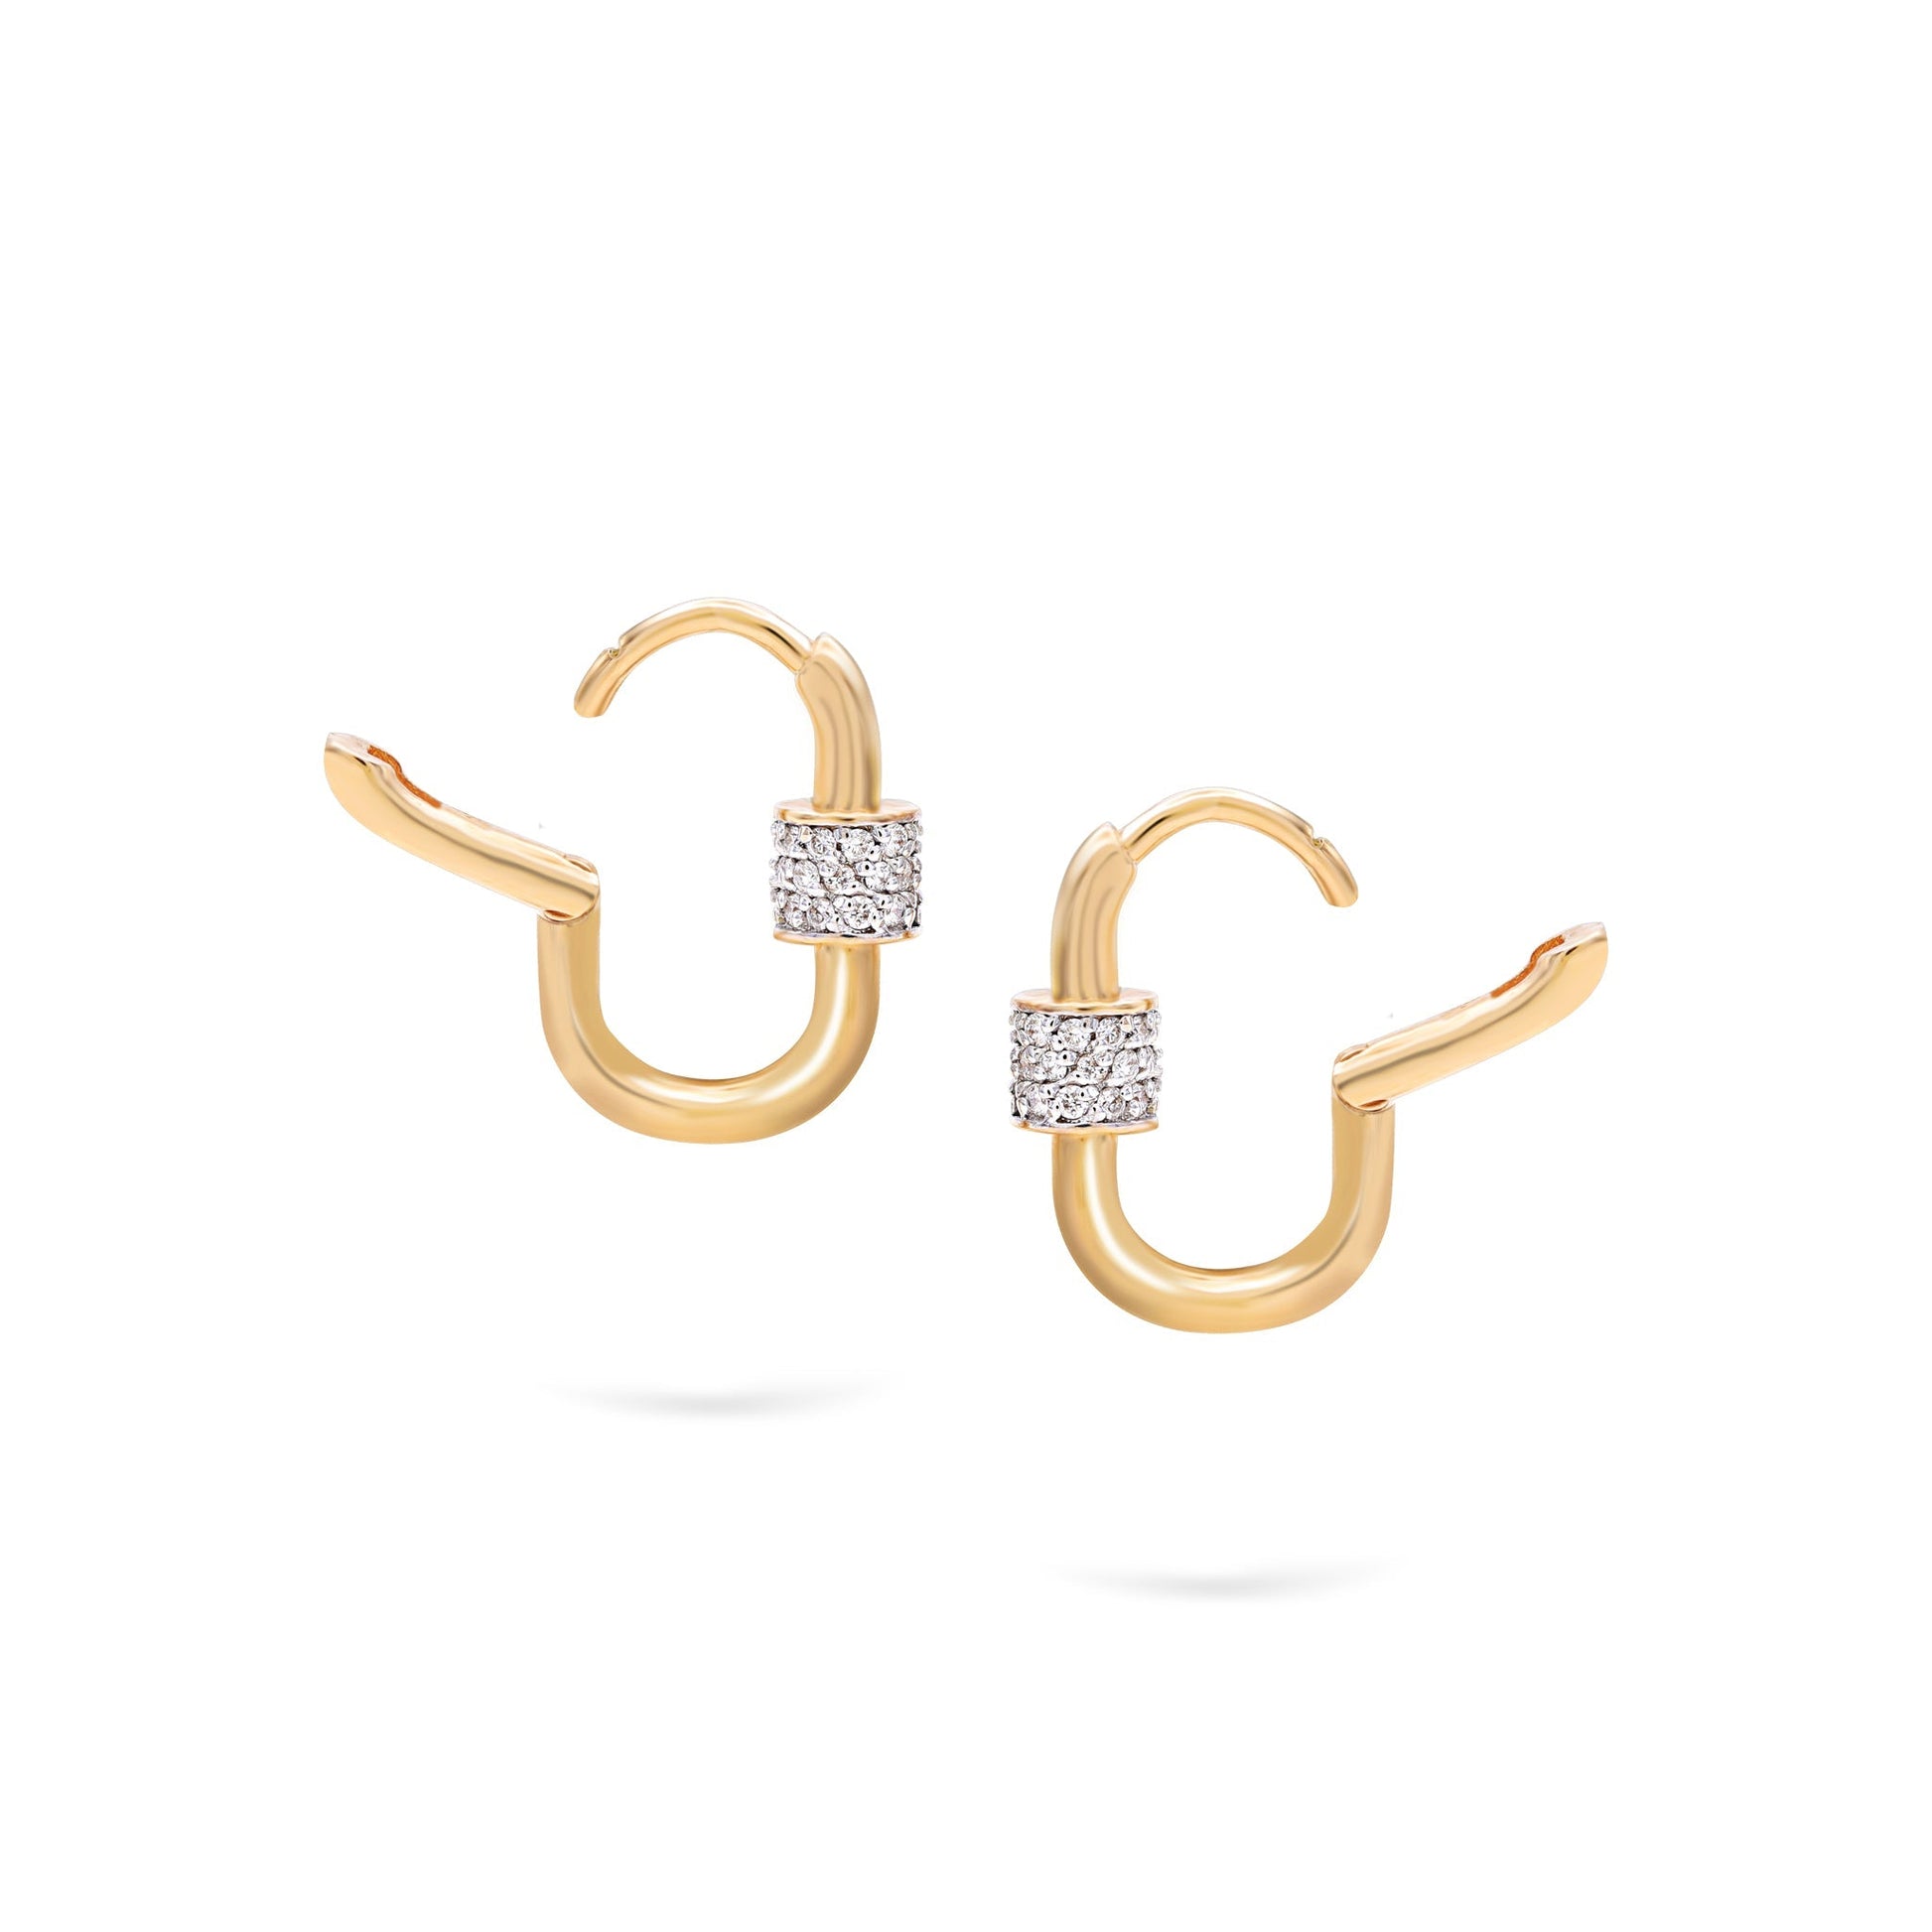 Jewelry Musica Hoops | Small Diamond Earrings | 0.43 Cts. | 14K Gold - earring Zengoda Shop online from Artisan